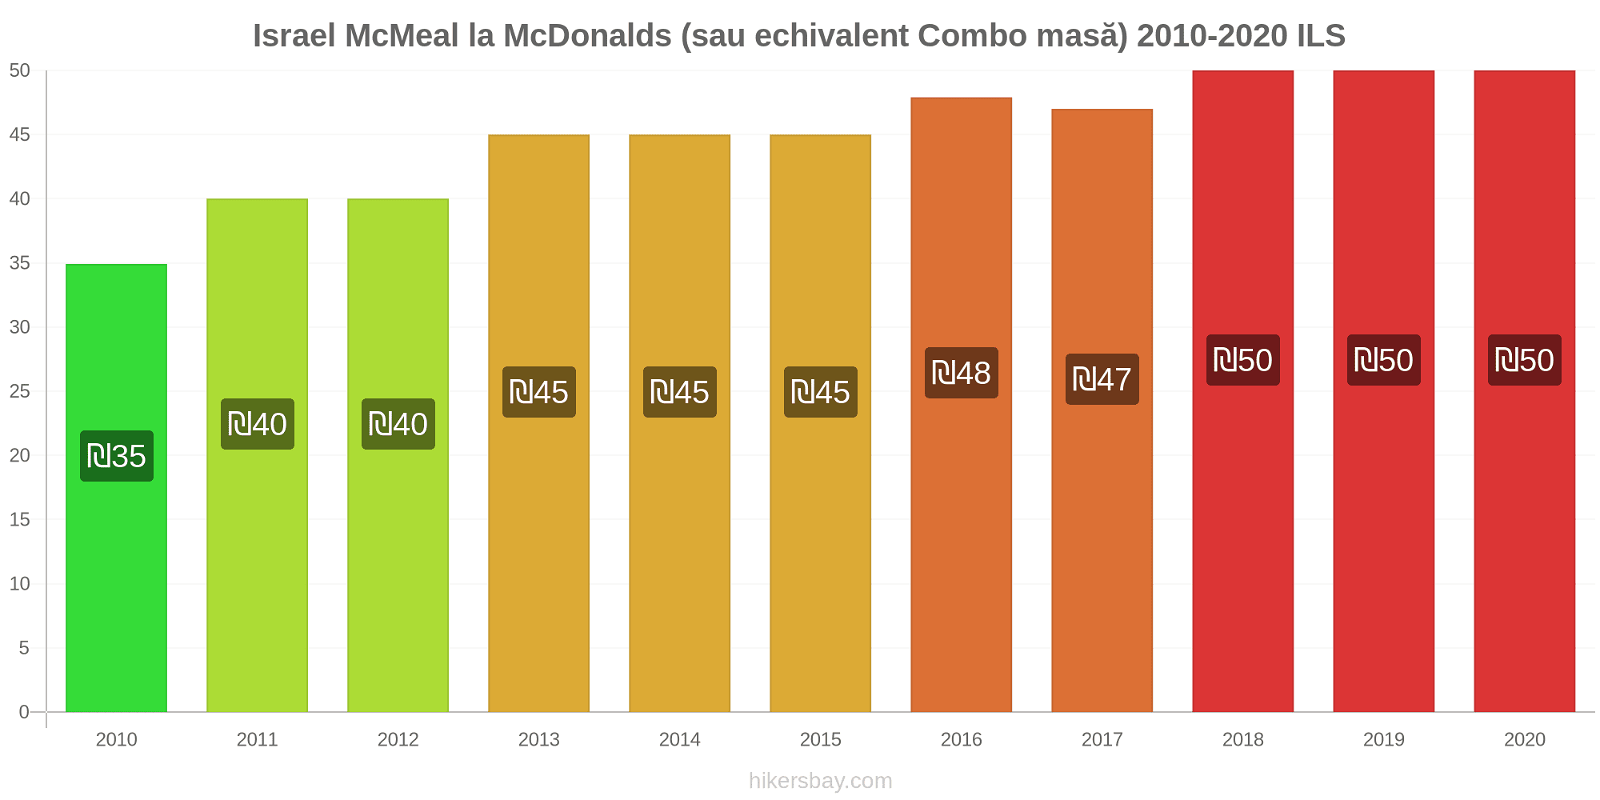 Israel modificări de preț McMeal la McDonalds (sau echivalent Combo masă) hikersbay.com